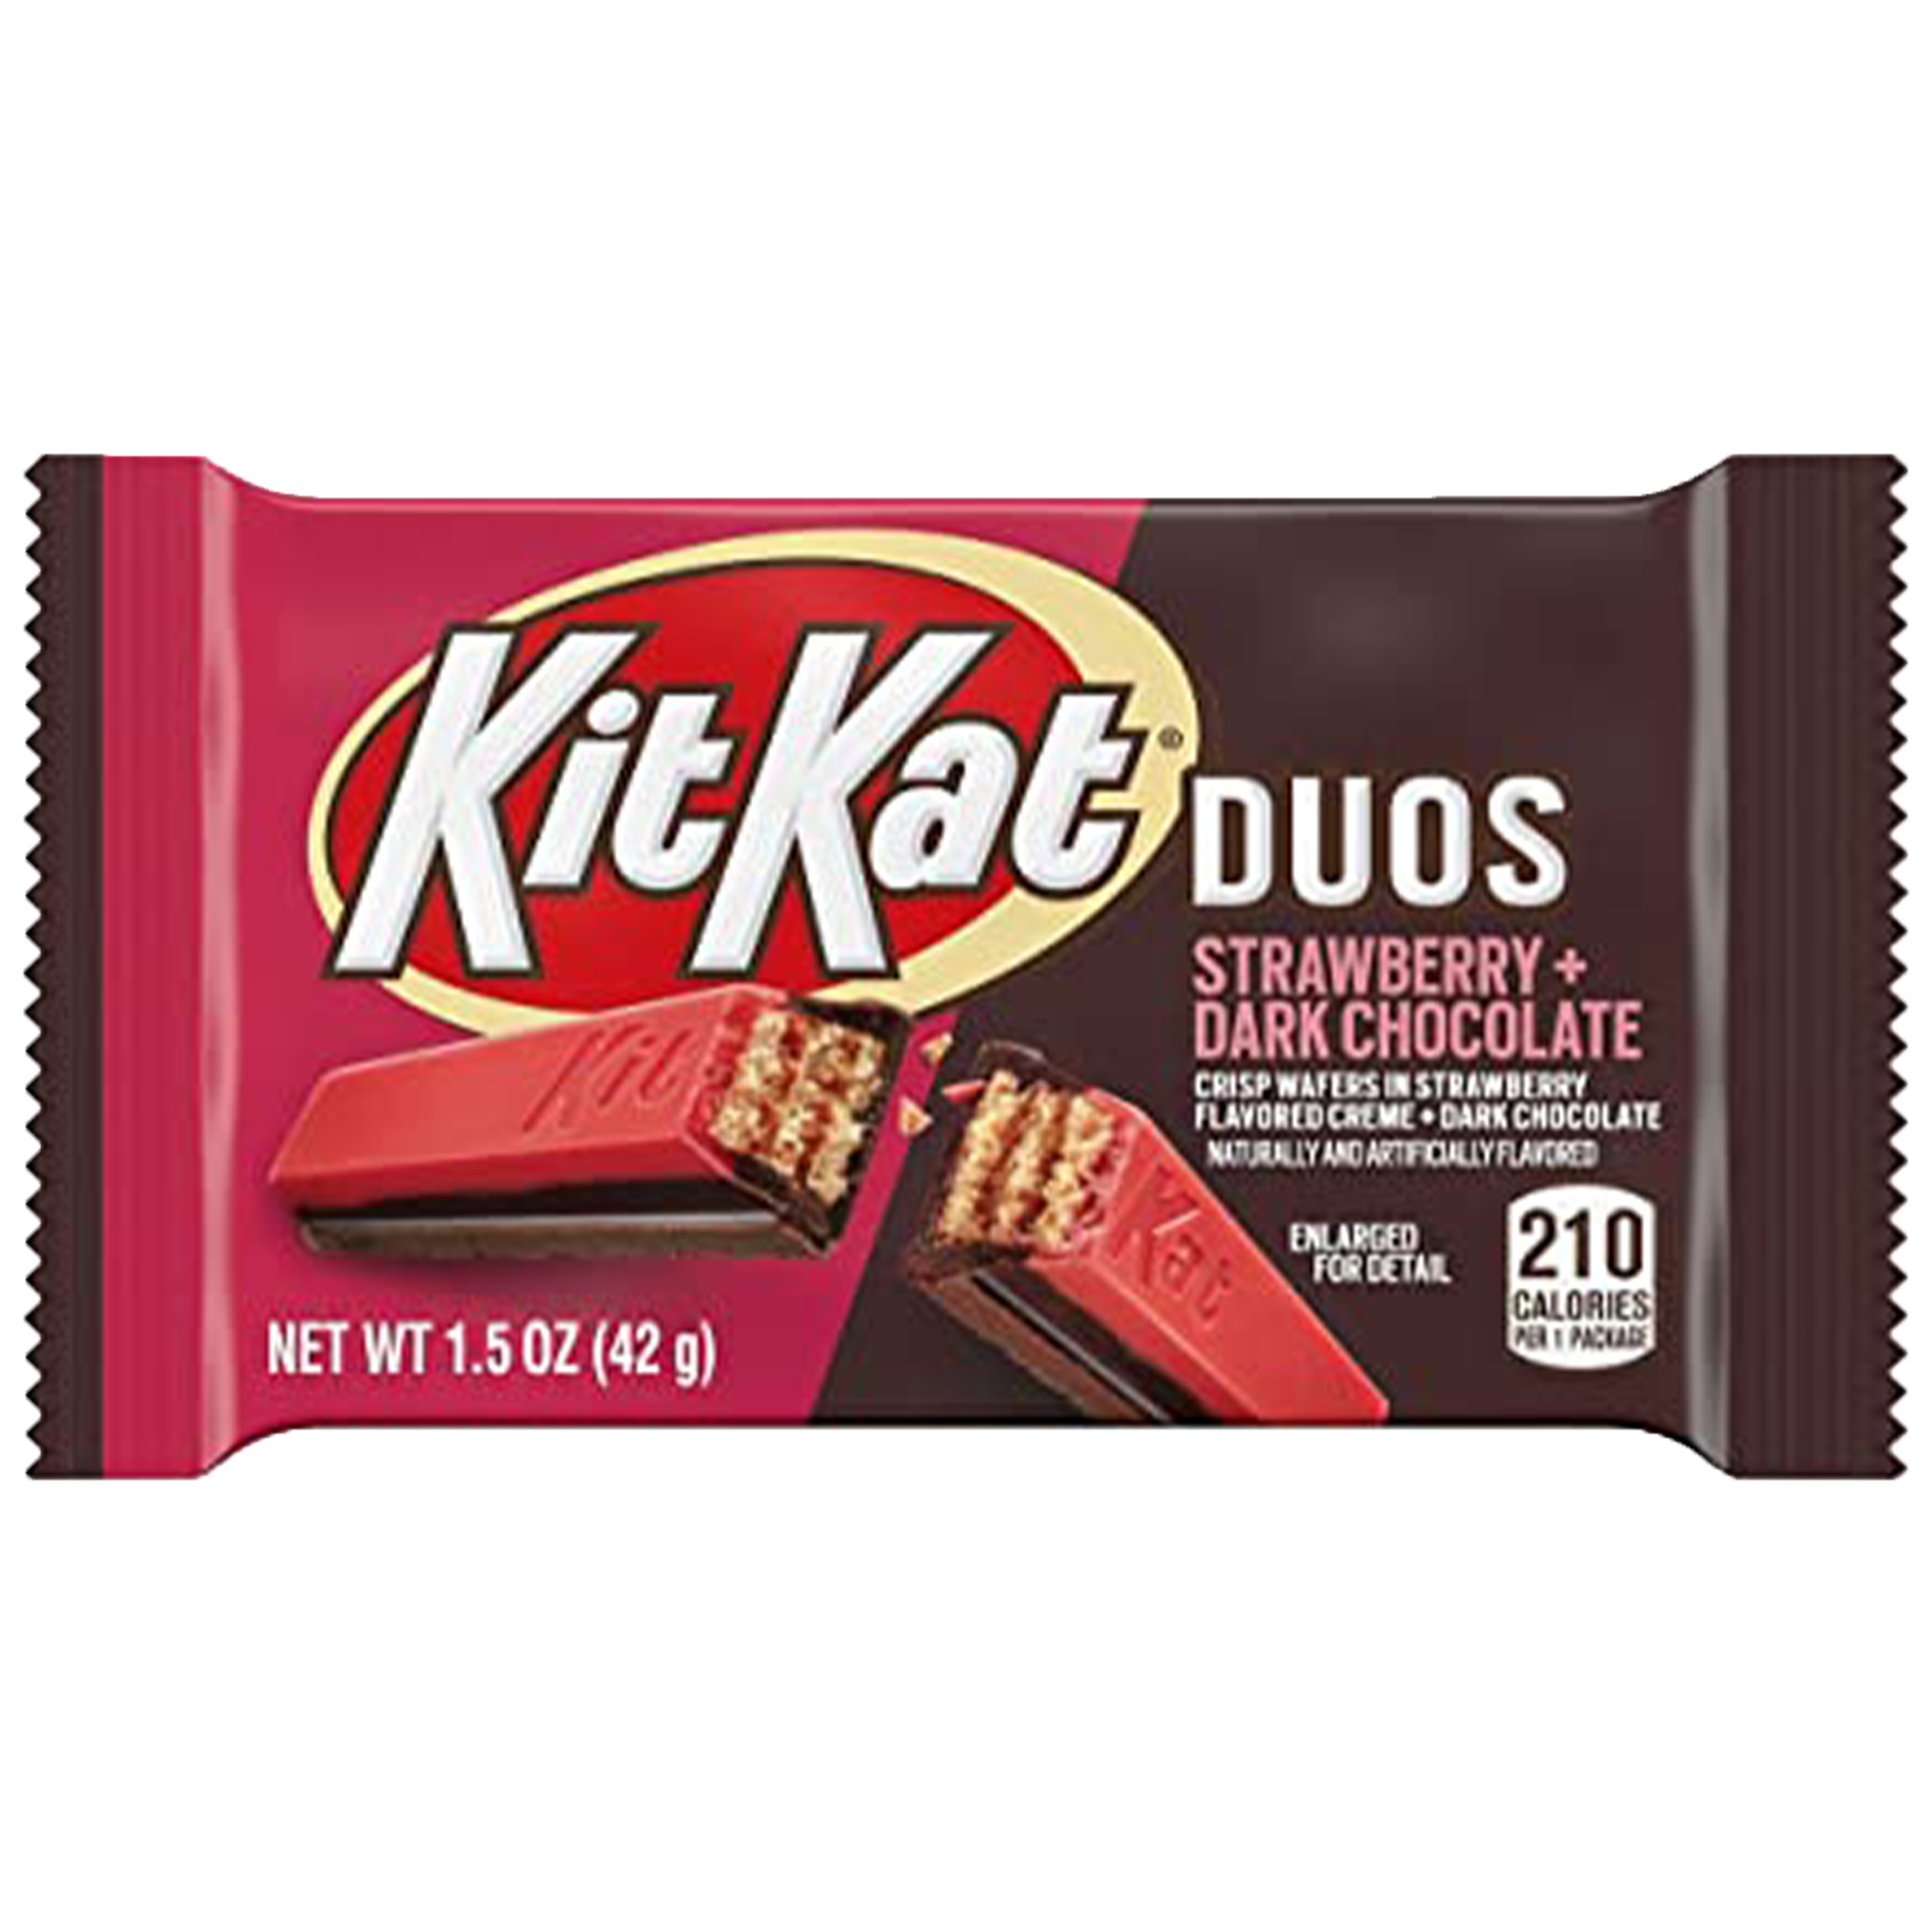 Kit Kat Duos - Strawberry & Dark Chocolate